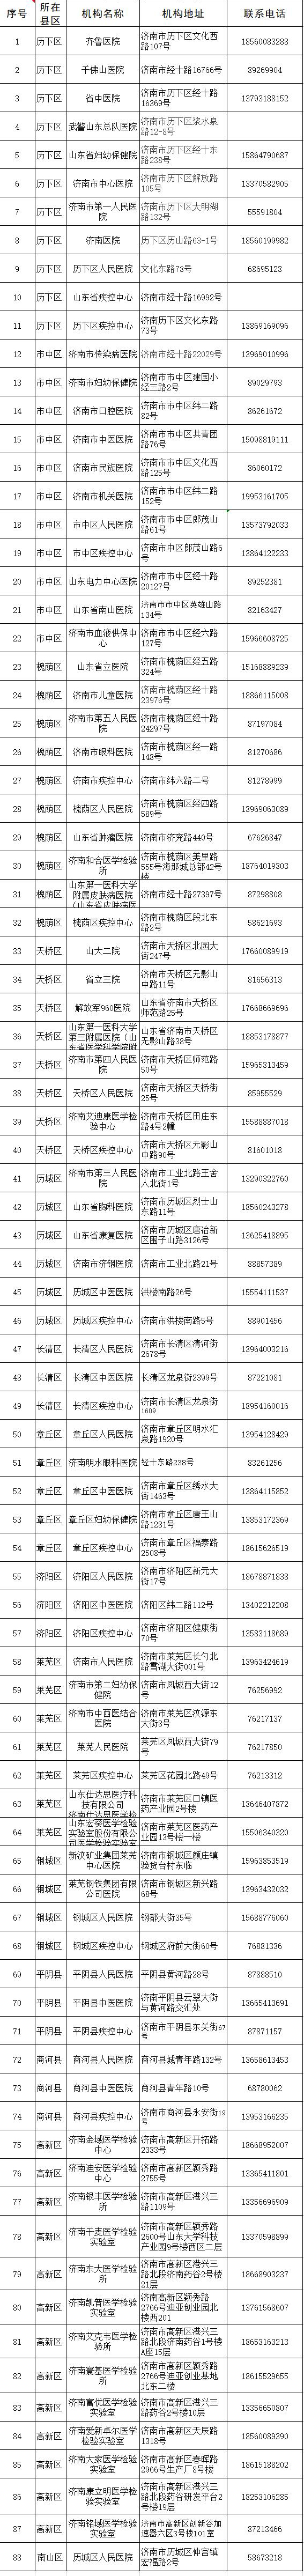 济南市具备核酸检测能力的88家医疗机构地址、电话公布